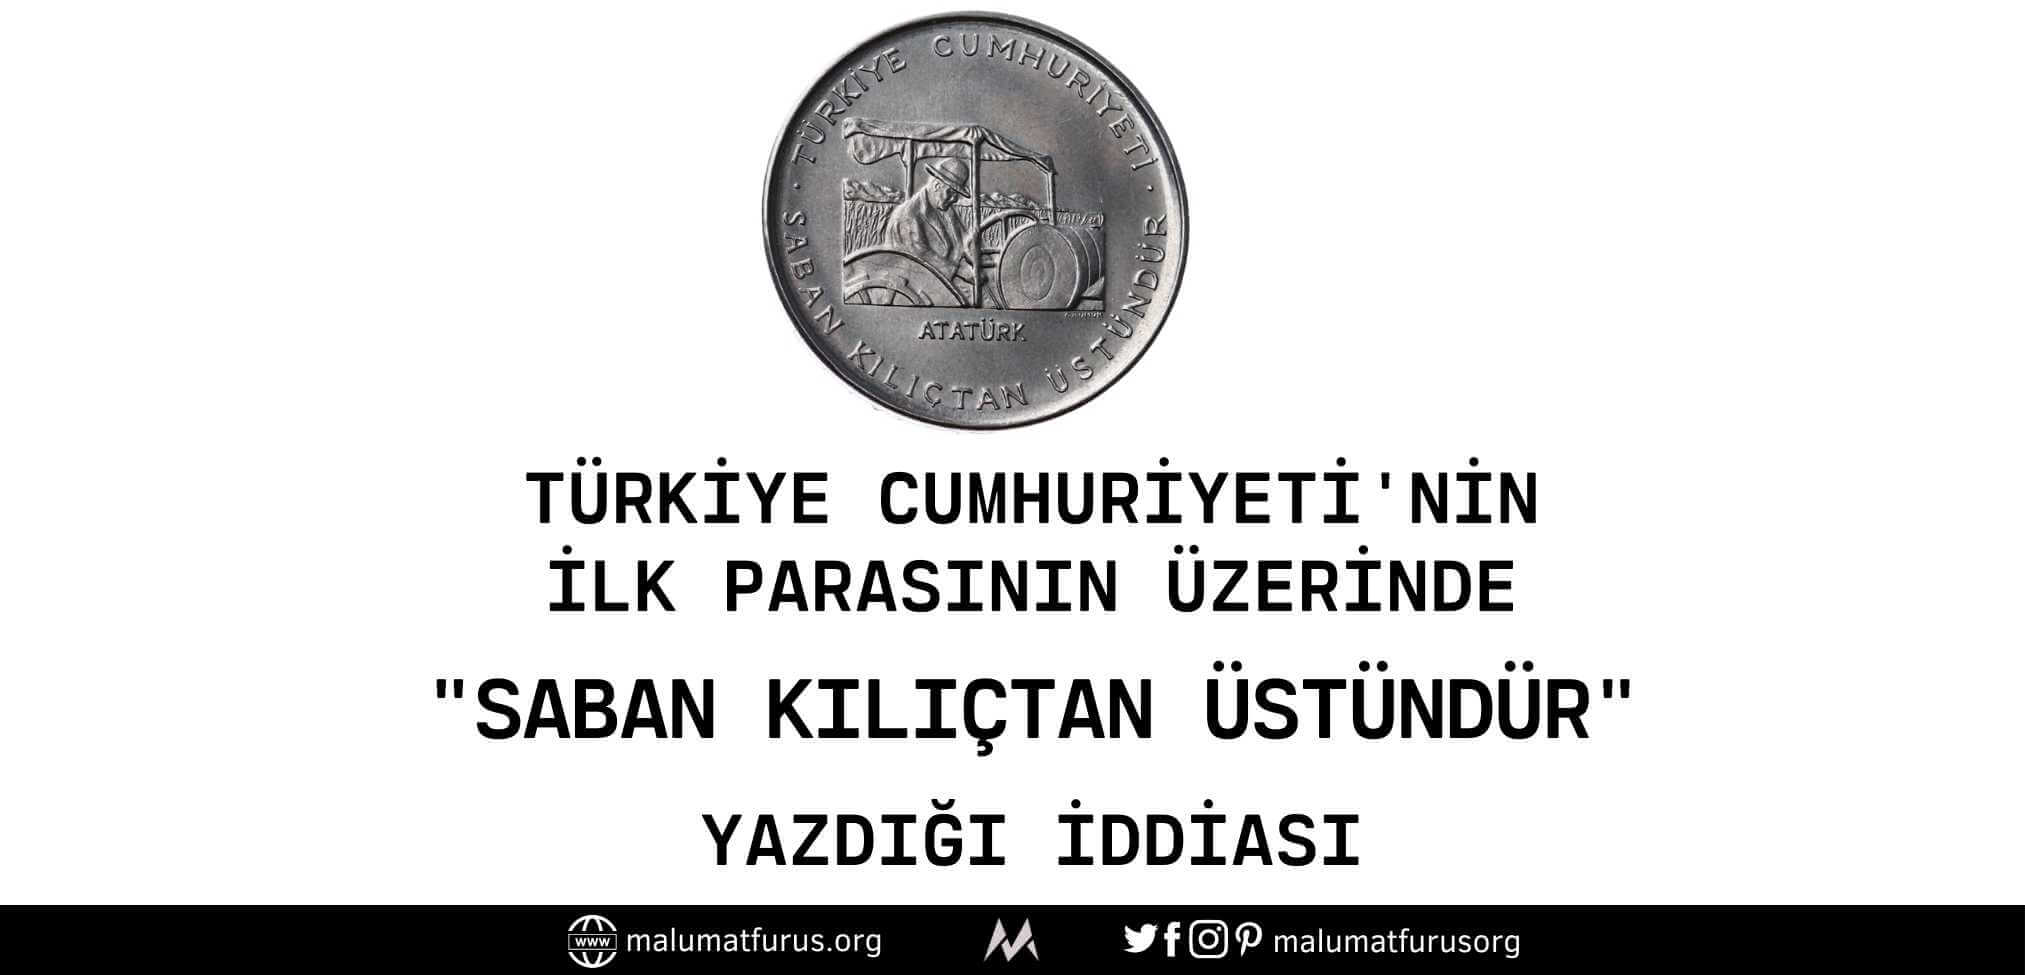 turkiye-cumhuriyetinin-ilk-madeni-parasi-saban-kilictir-ustundur